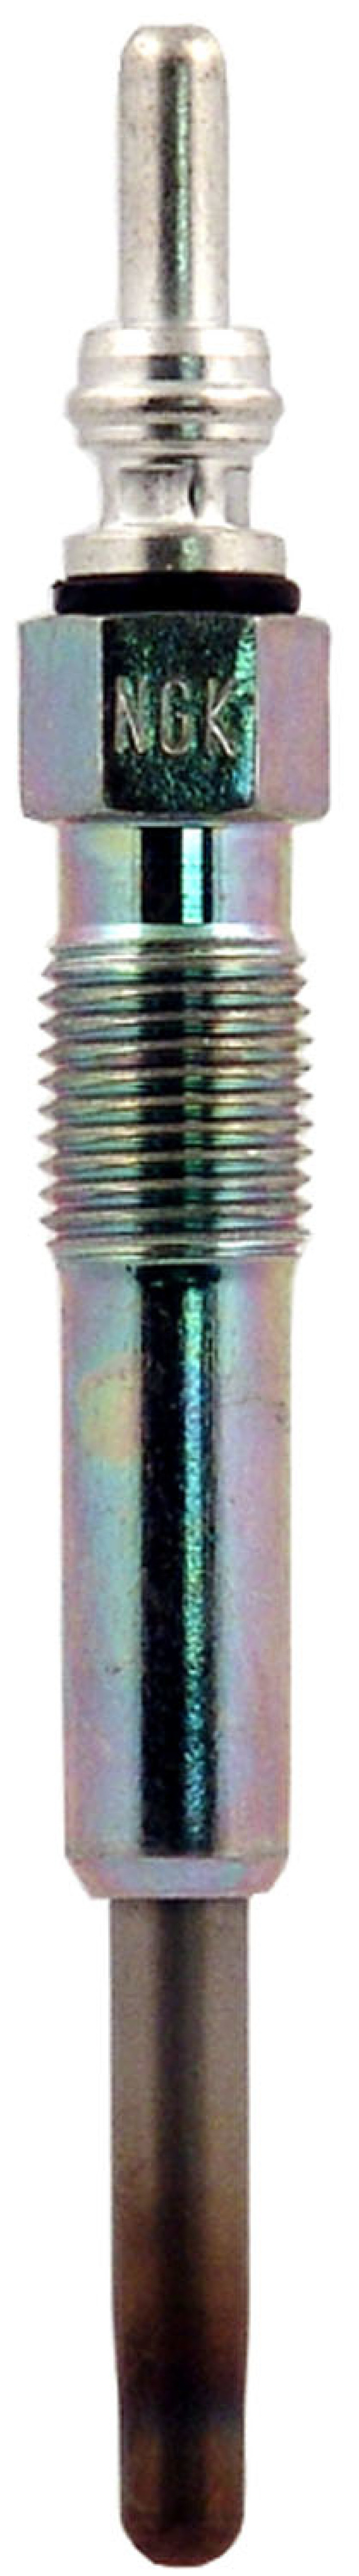 NGK Glow Plugs Box of 1 (Y-732J) - 5909